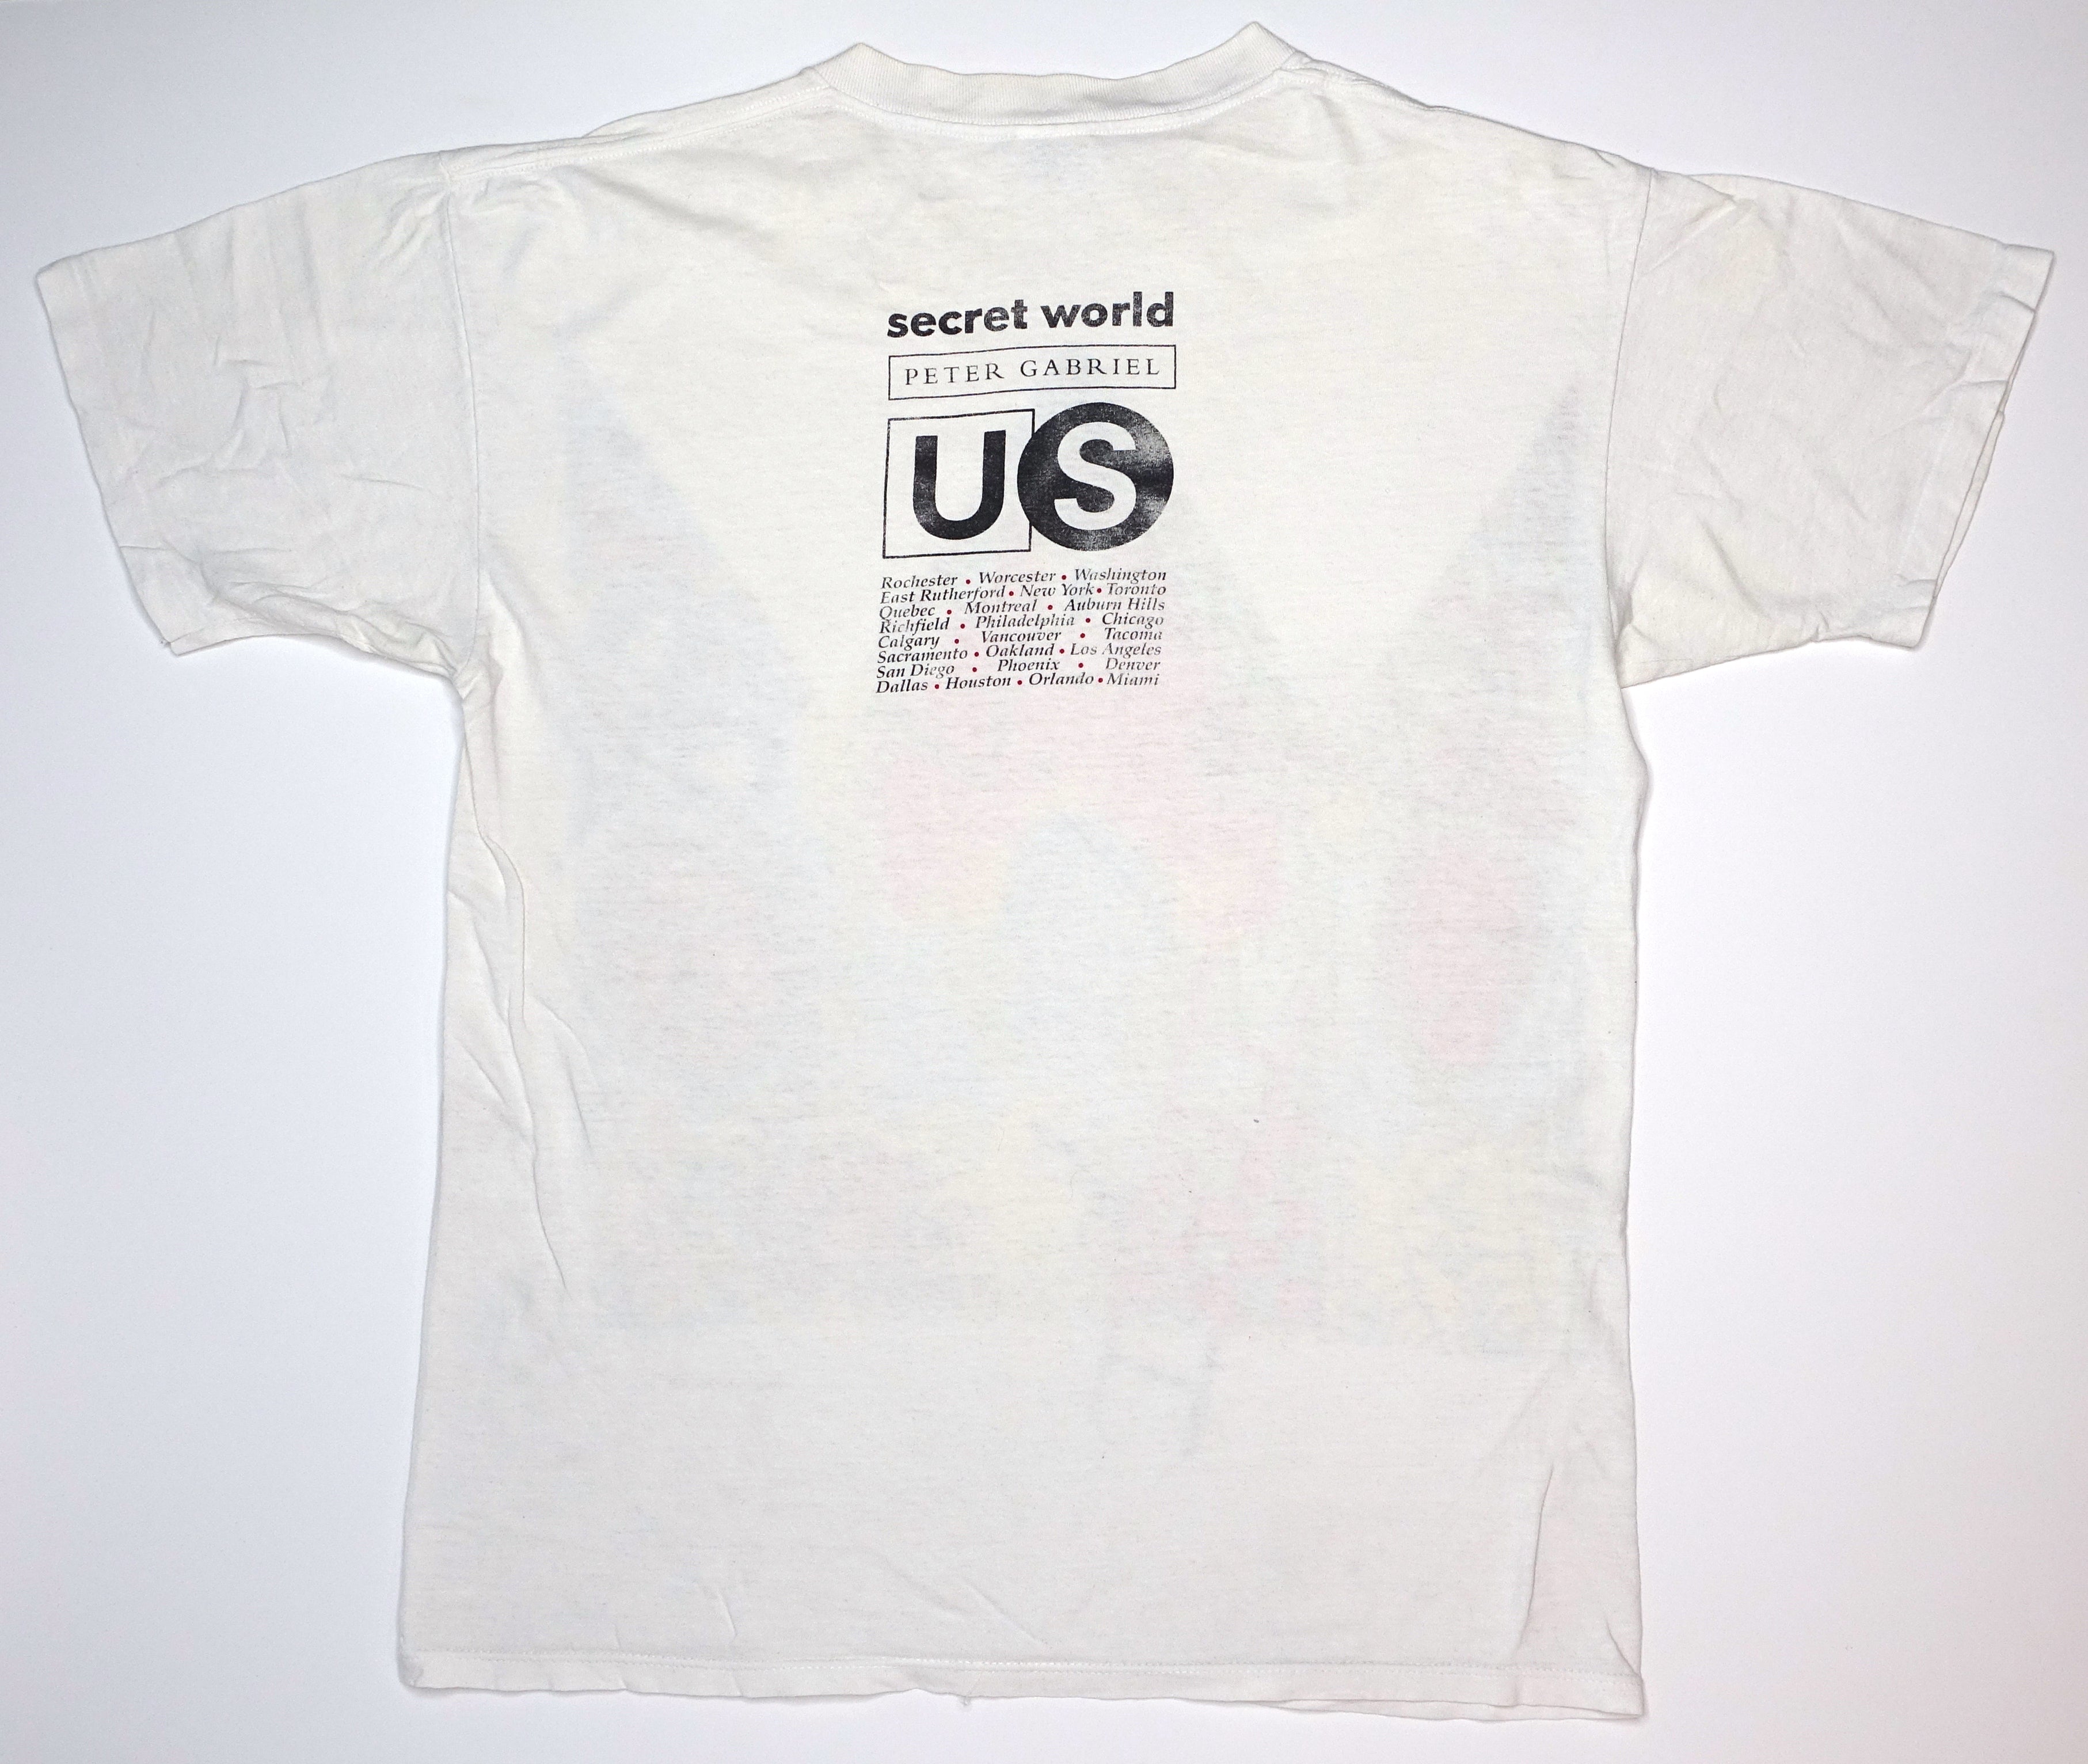 Peter Gabriel - Secret World US 1992 Tour Shirt Size Large